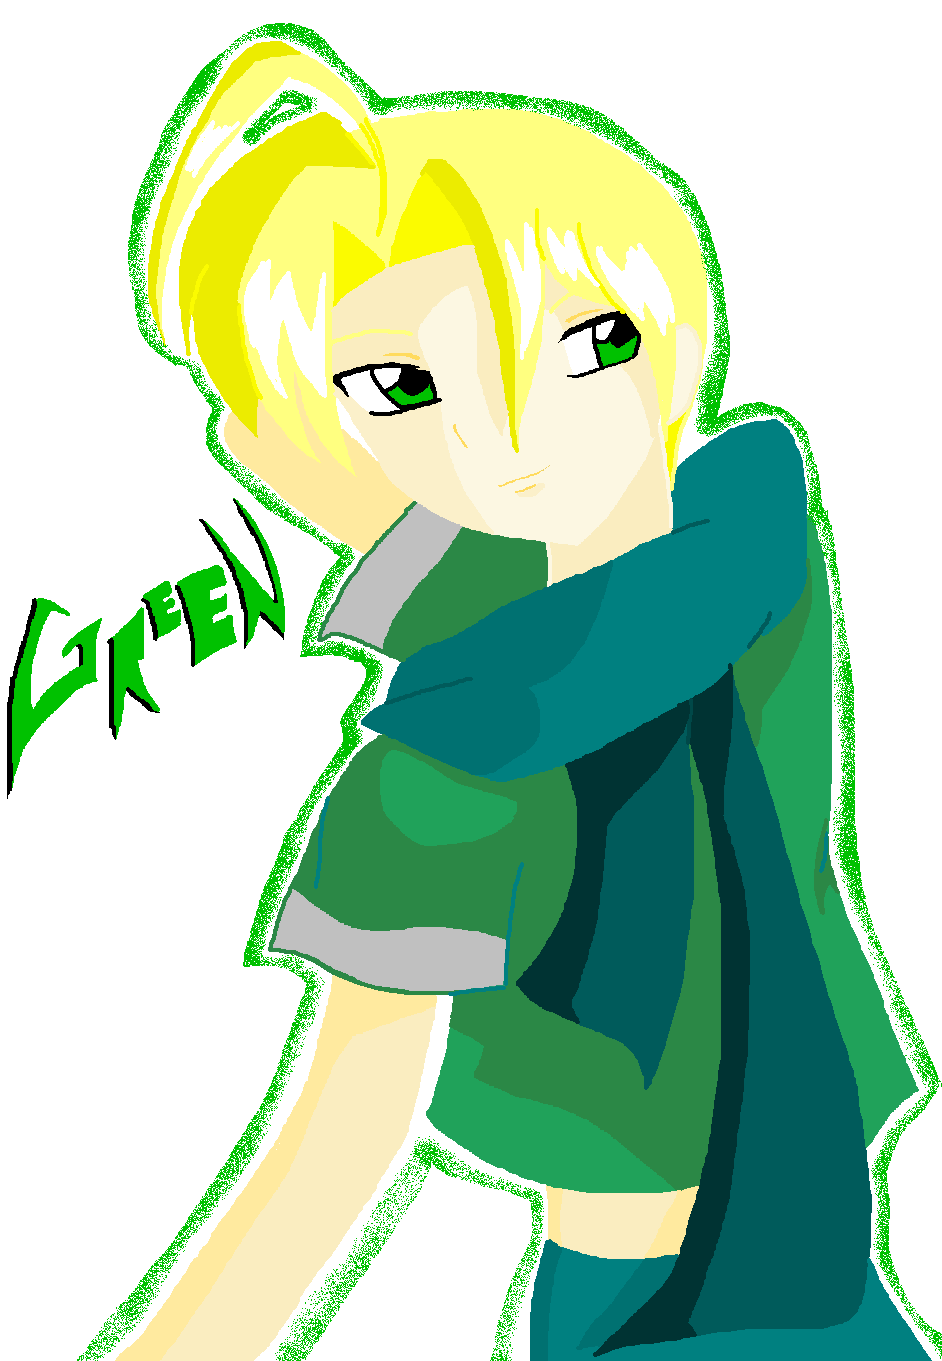 Some Green guy by Anime_Yokai_Mckai